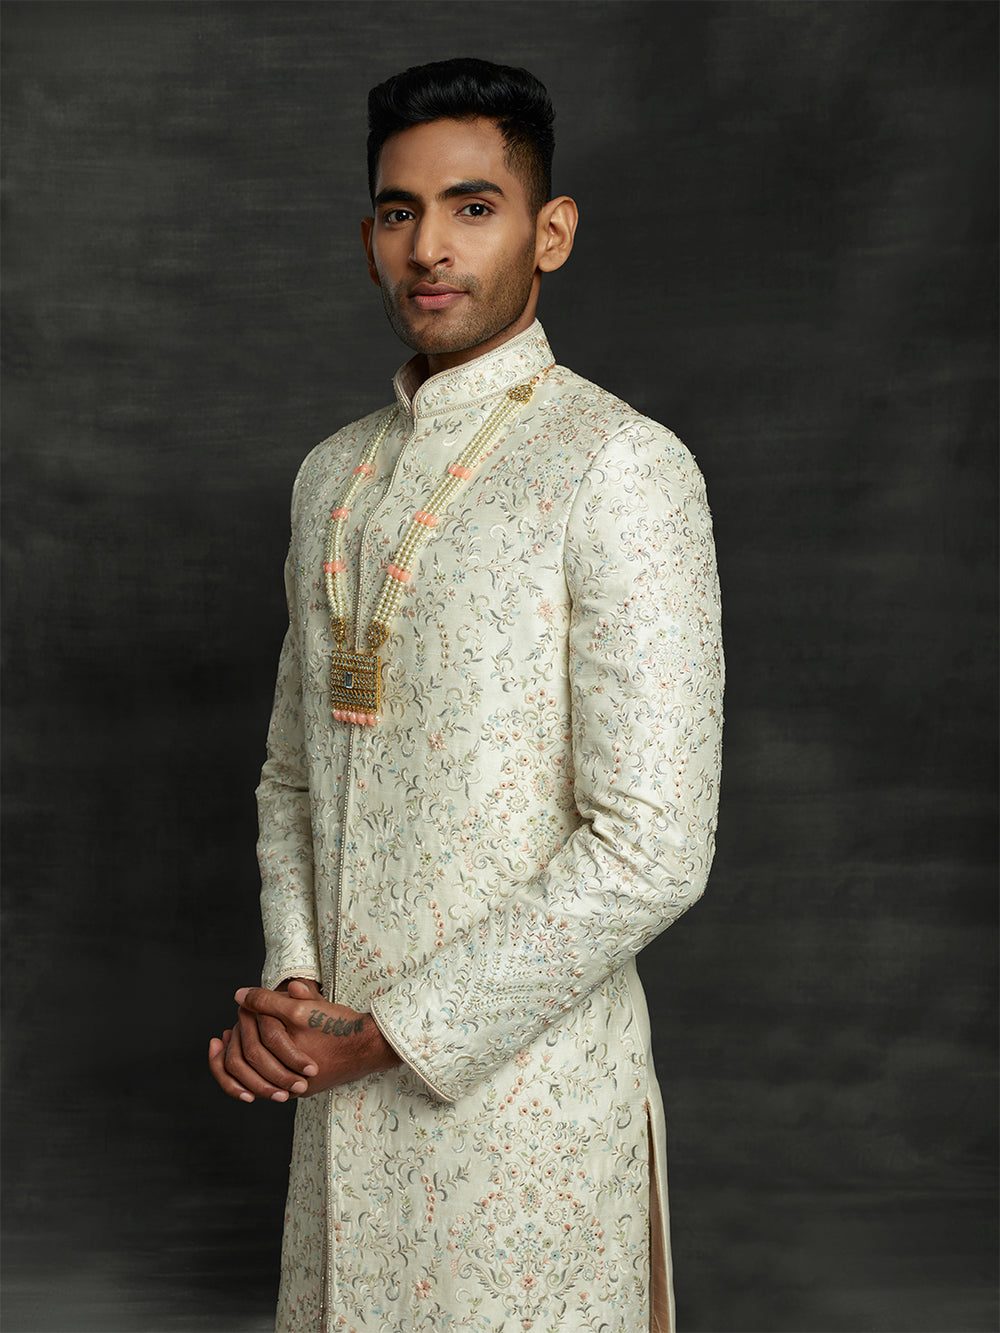 off-white sherwani from groom